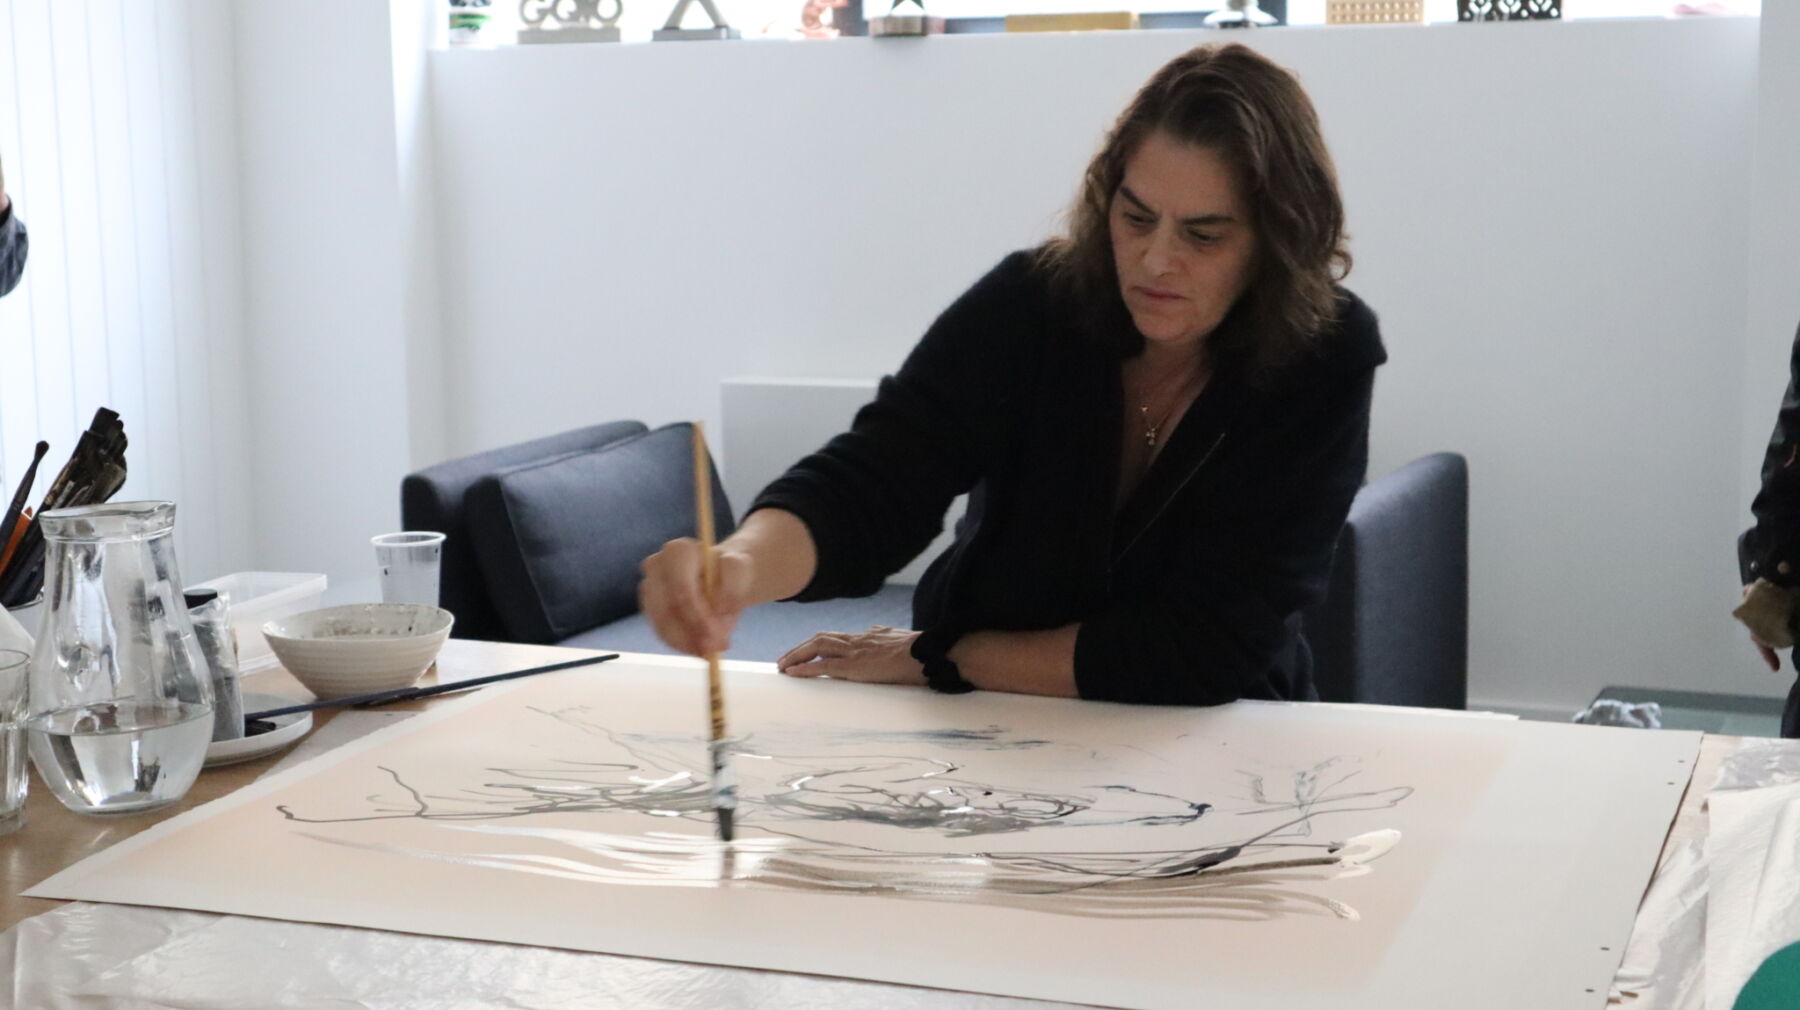 Kunstner sitter med pensel i hånden og maler. Foto